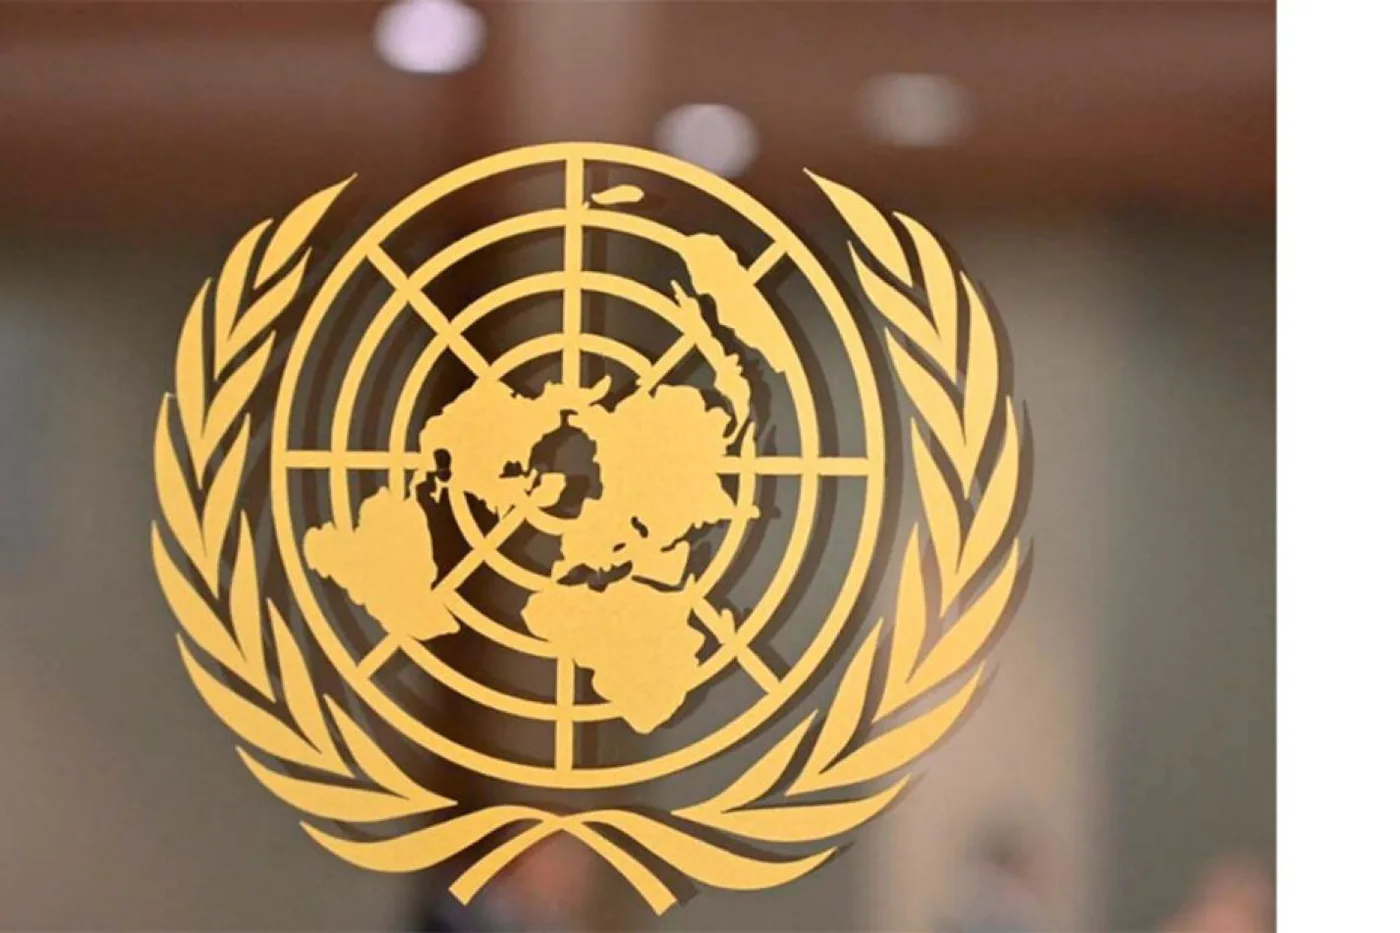 La ONU recomienda no utilizar la palabra "señorita"